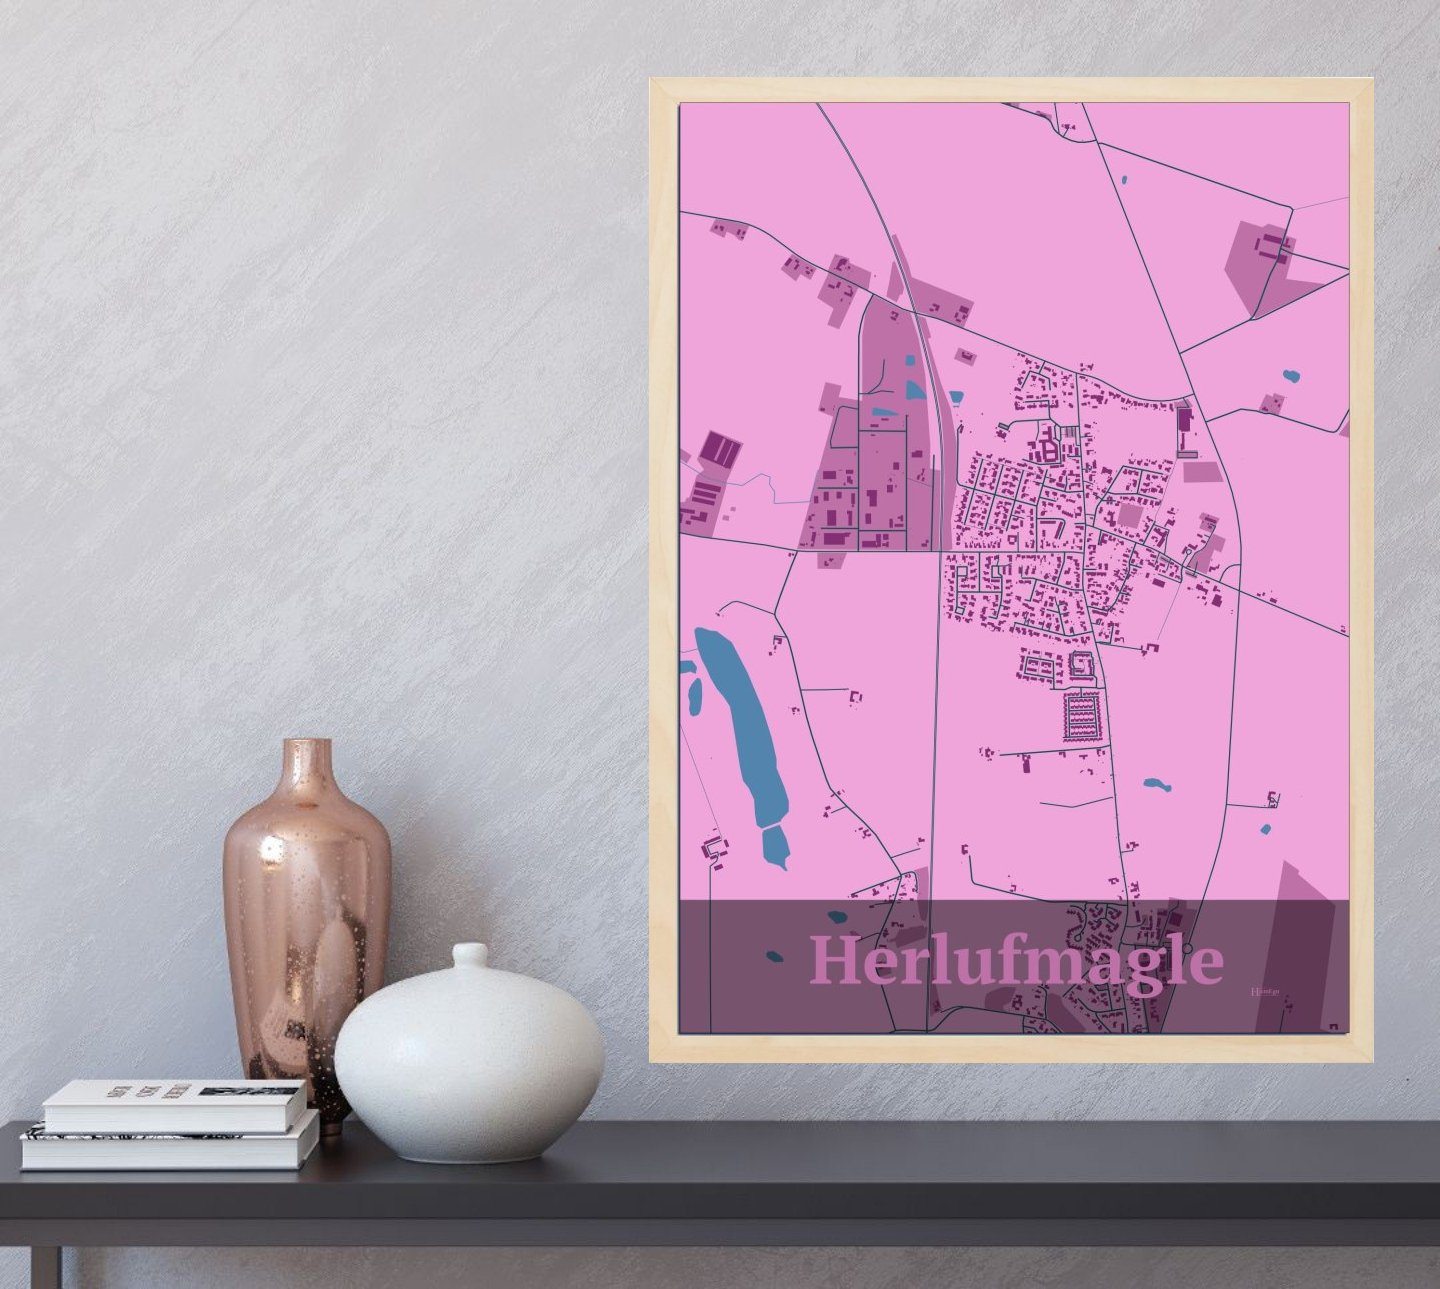 Herlufmagle plakat i farve  og HjemEgn.dk design firkantet. Design bykort for Herlufmagle